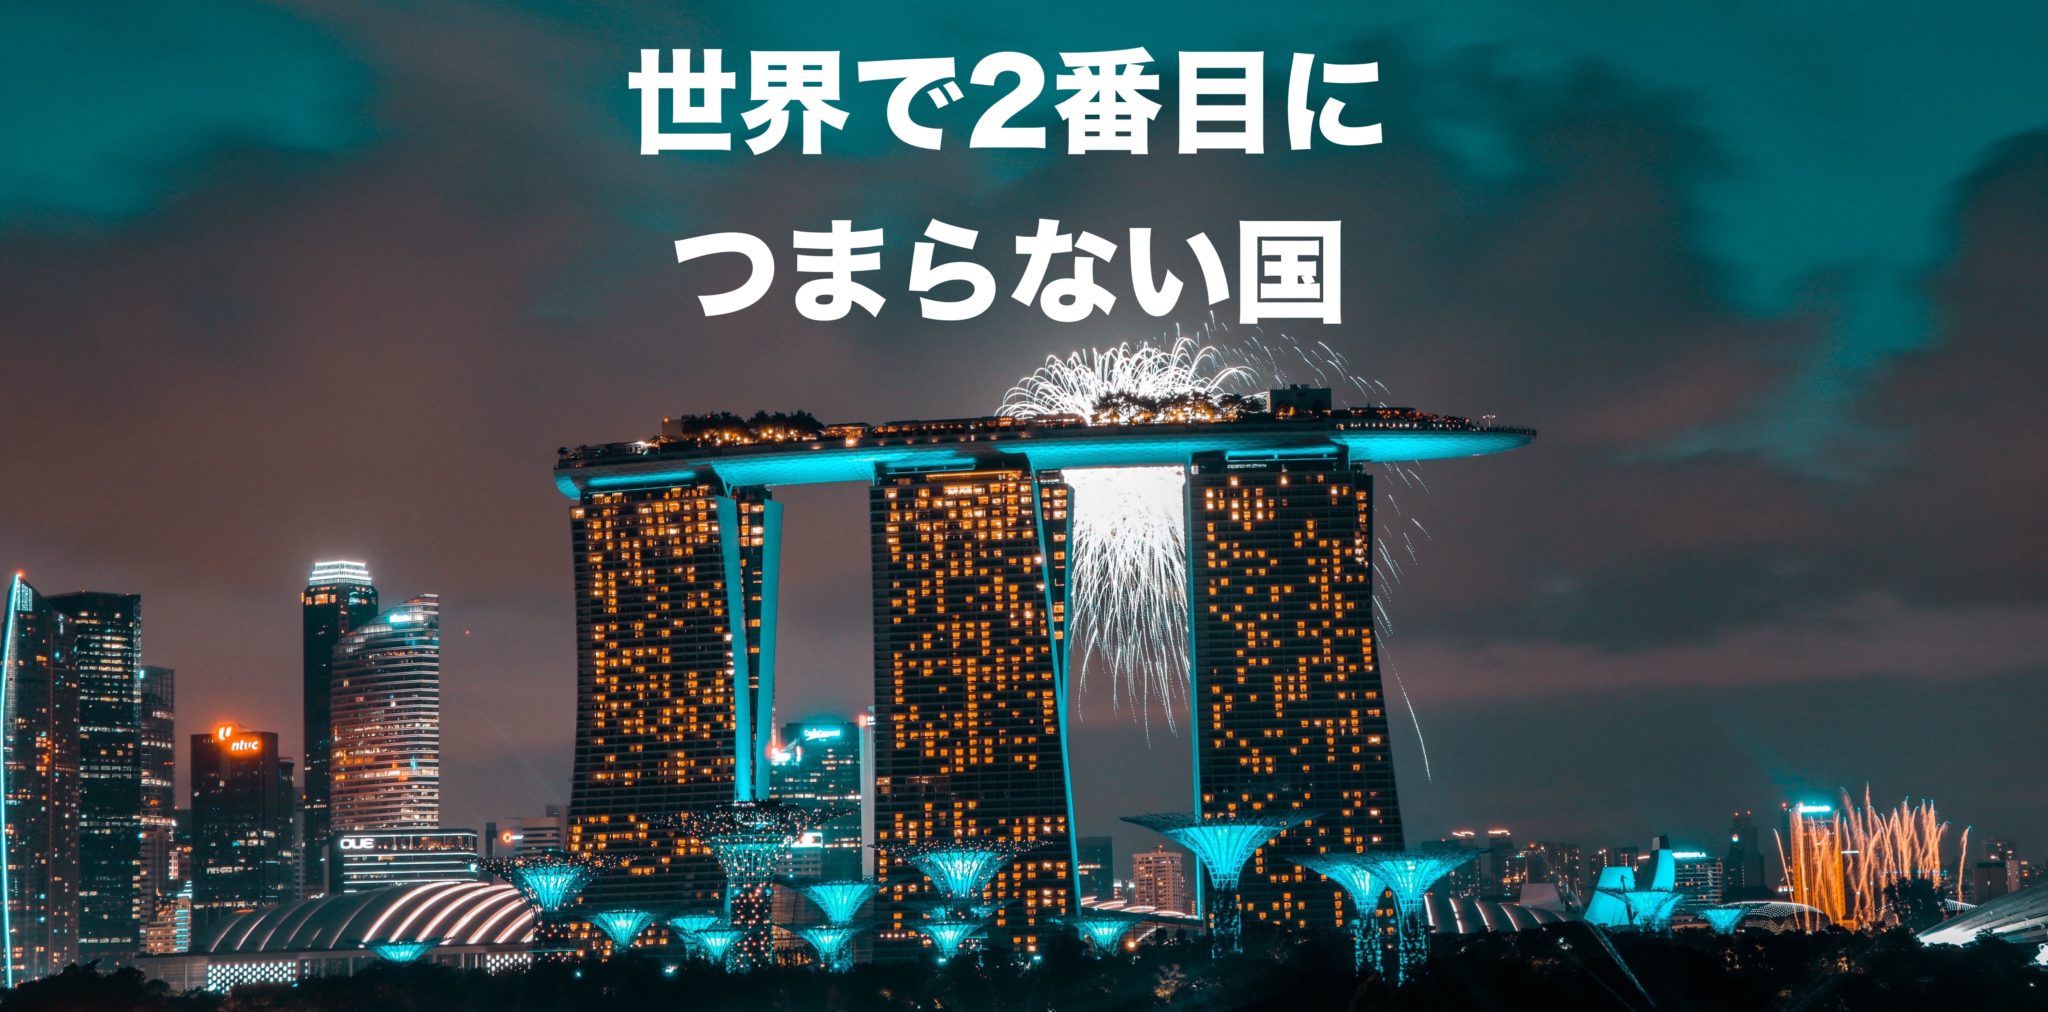 世界で2番目につまらない国 シンガポール Dansingapore